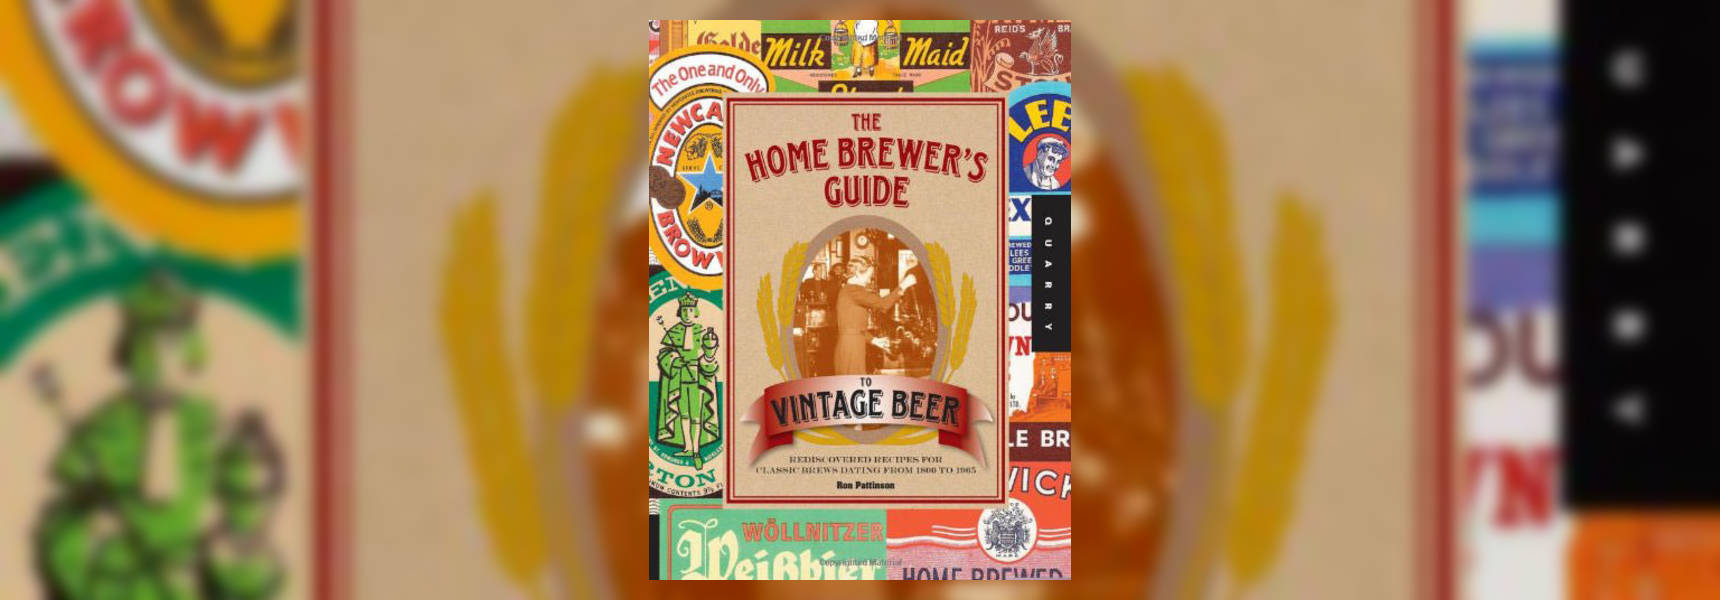 Vintage Beer book cover